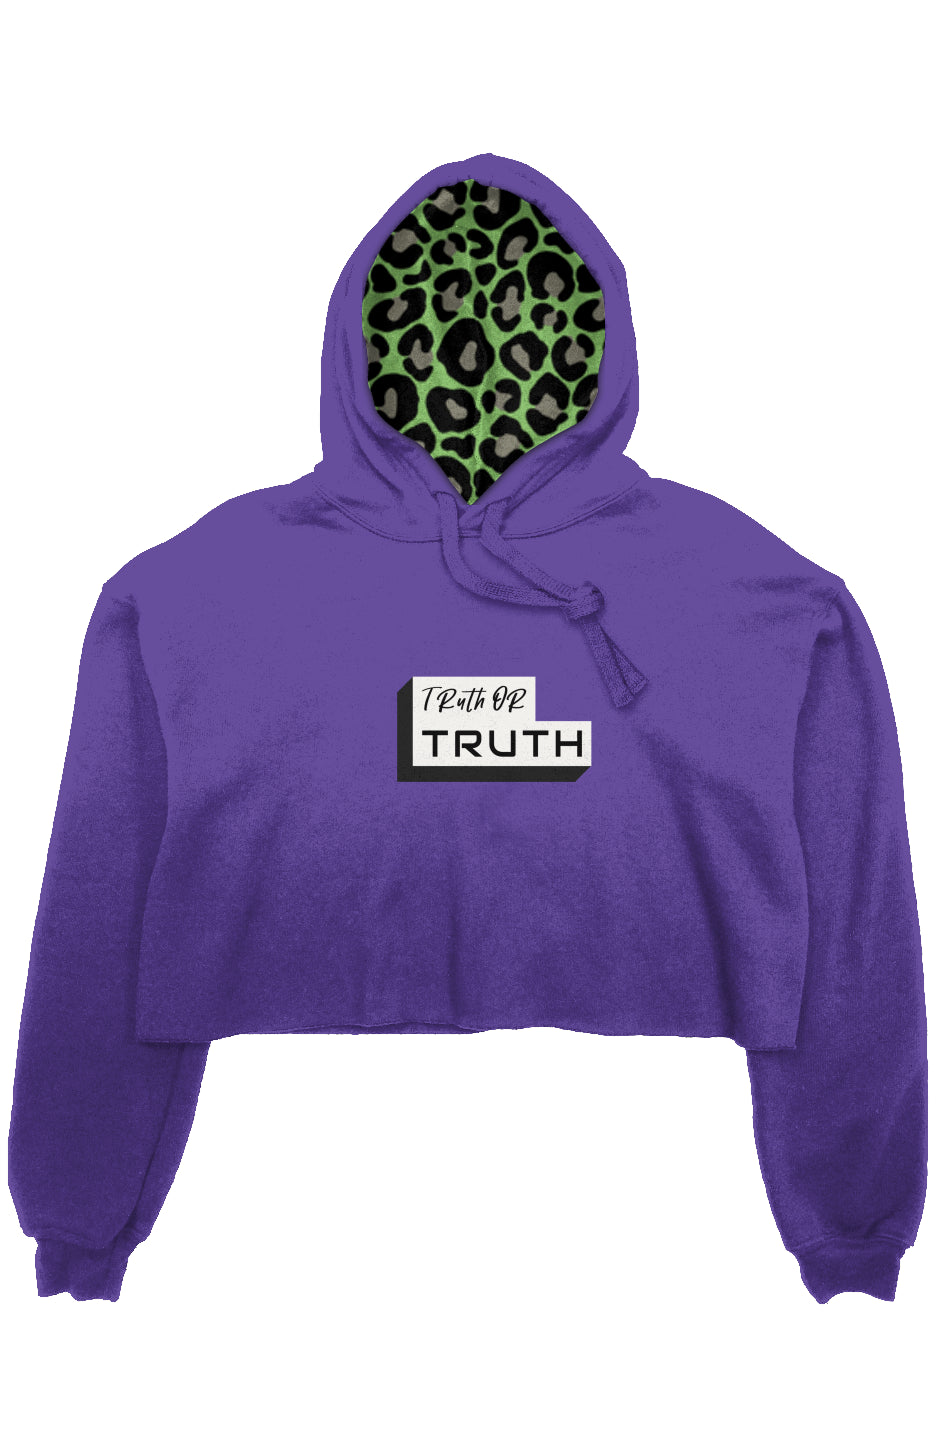 Truthortruth crop fleece hoodie